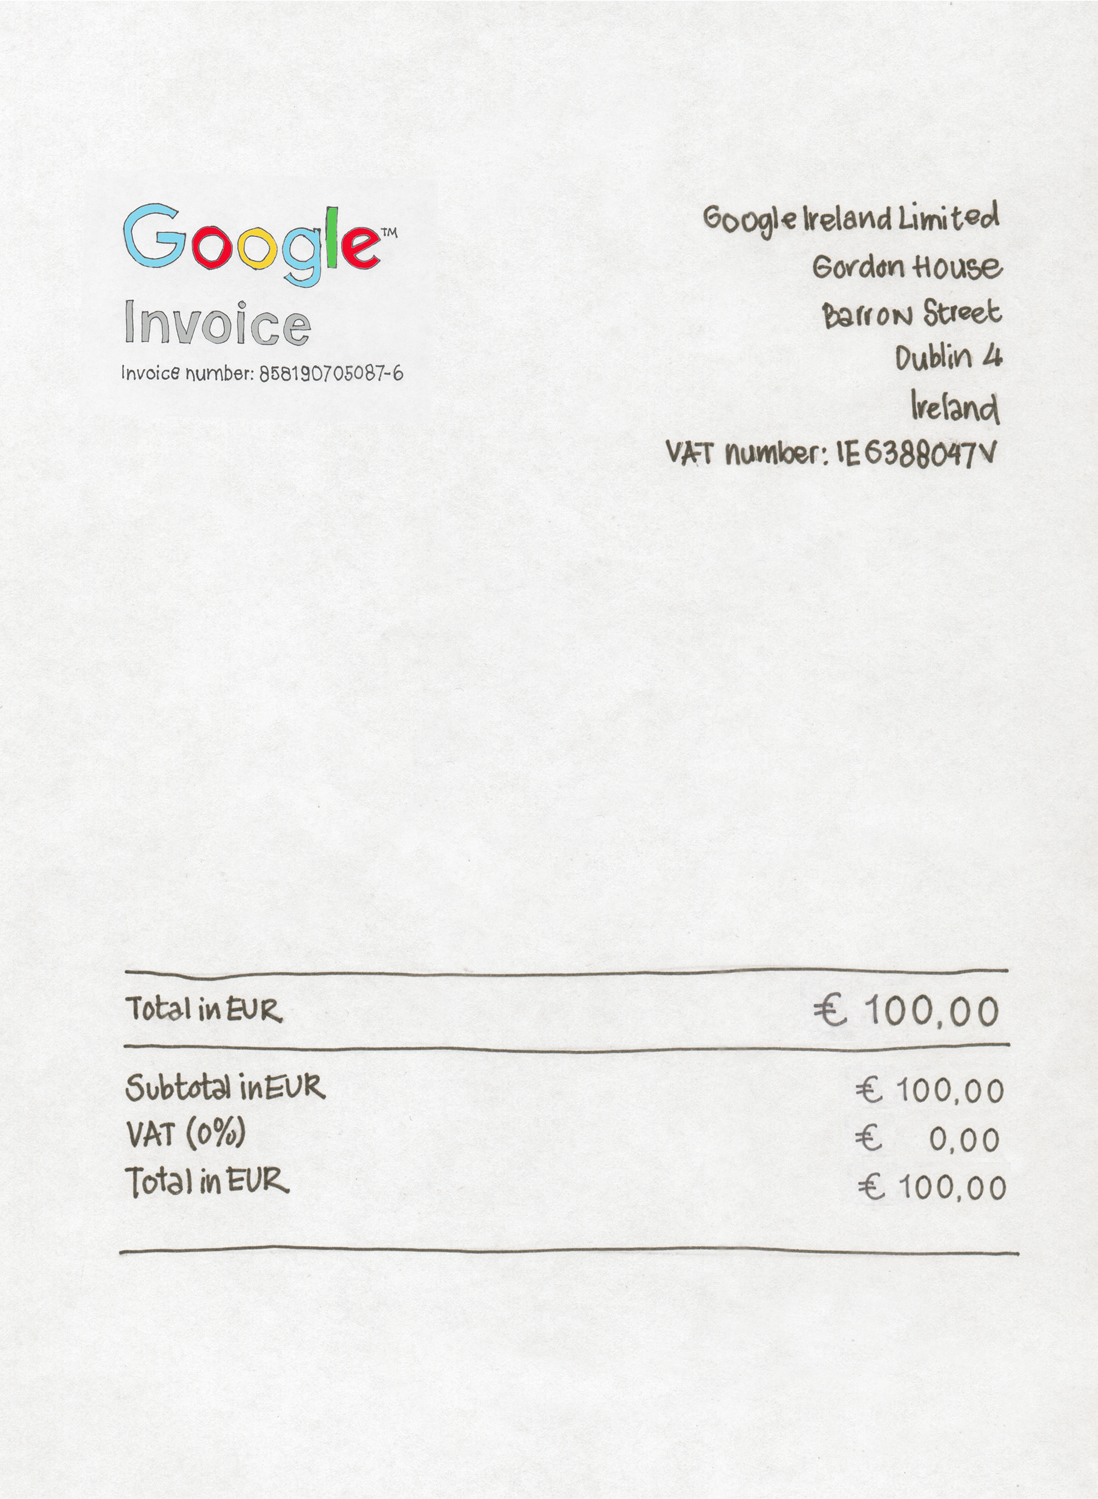 zij is ethiek smaak Kun je de BTW van Googlefacturen terugvragen als voorbelasting?